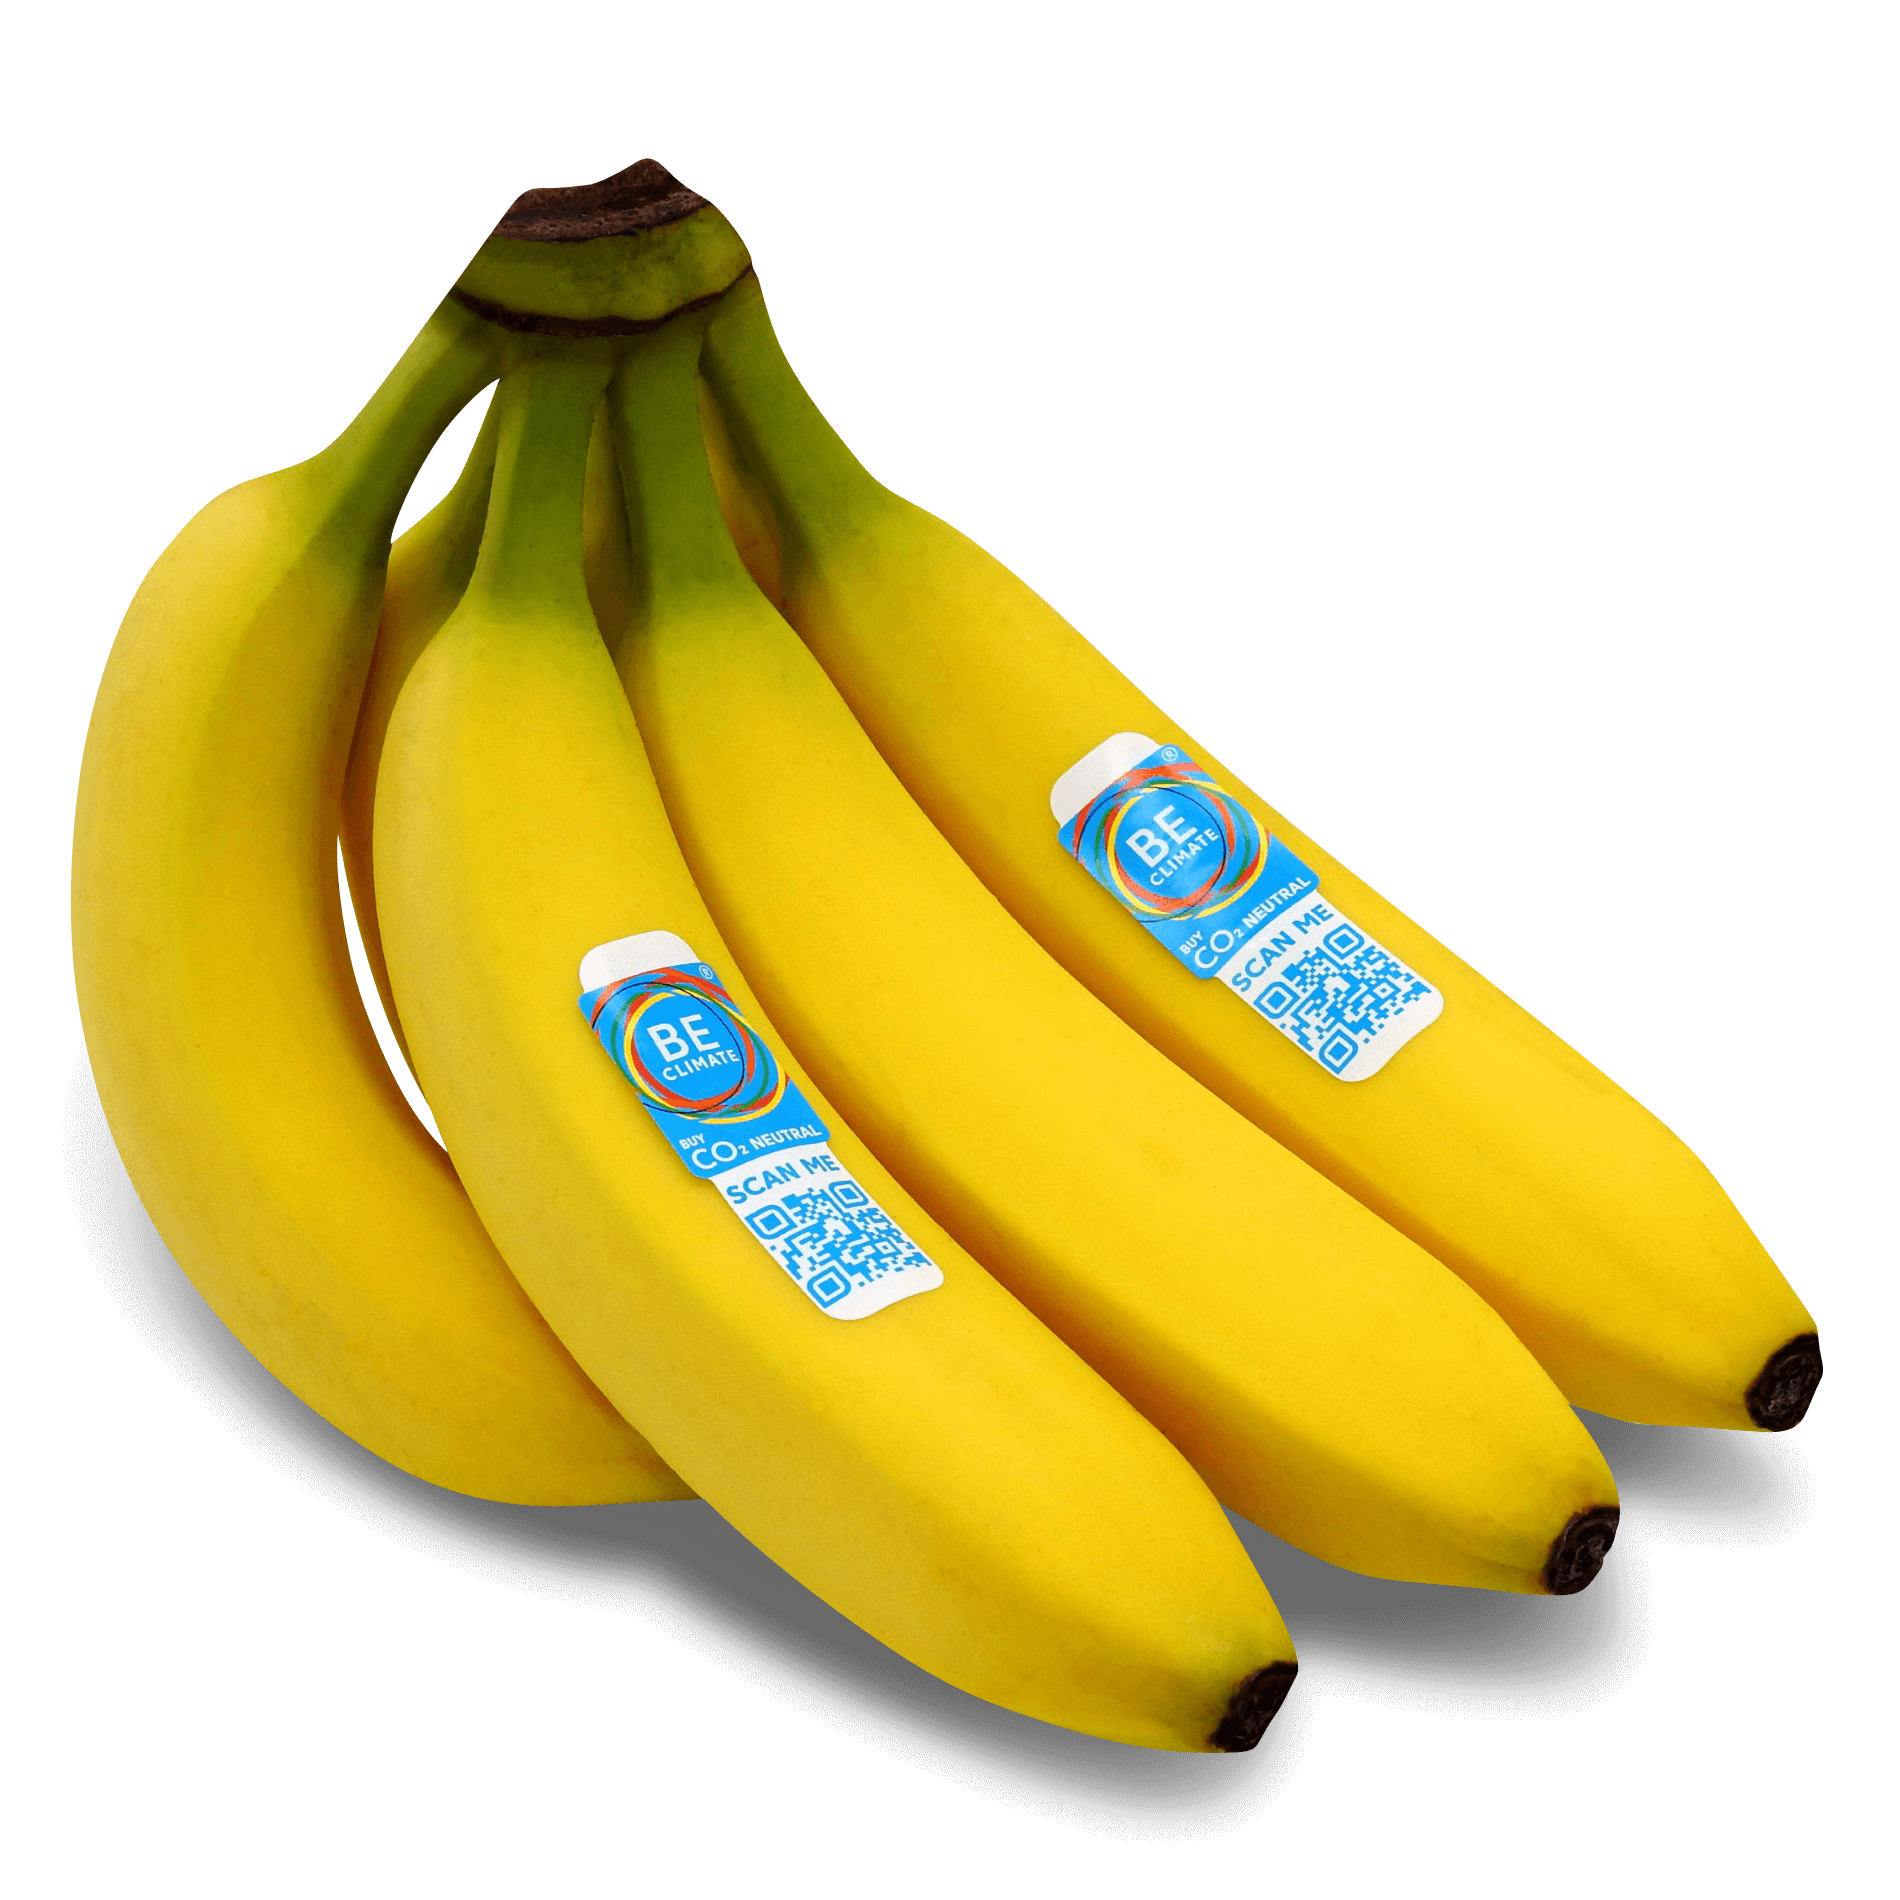 Bio Bananen 'aus nachhaltigem Handel'